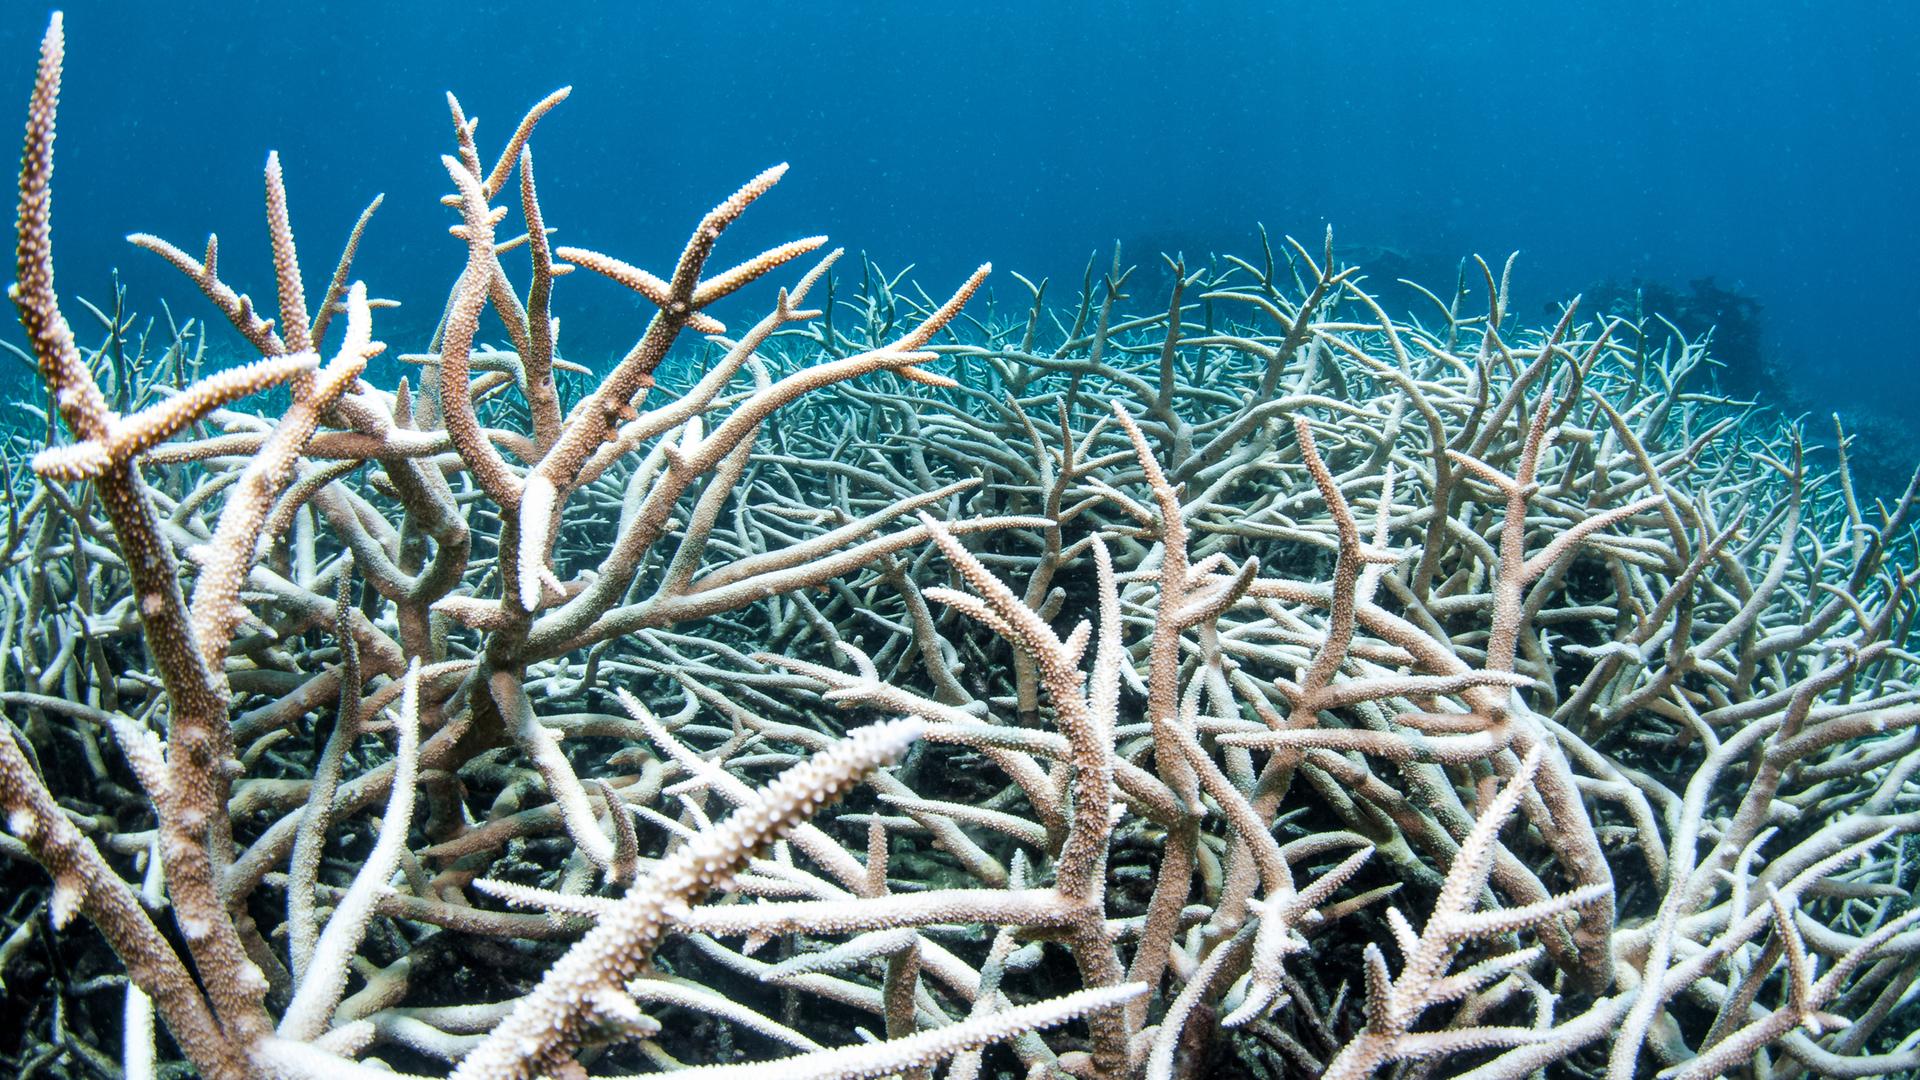 Korallenbleiche im Atlantik, die Korallen werden weiss und sterben ab.